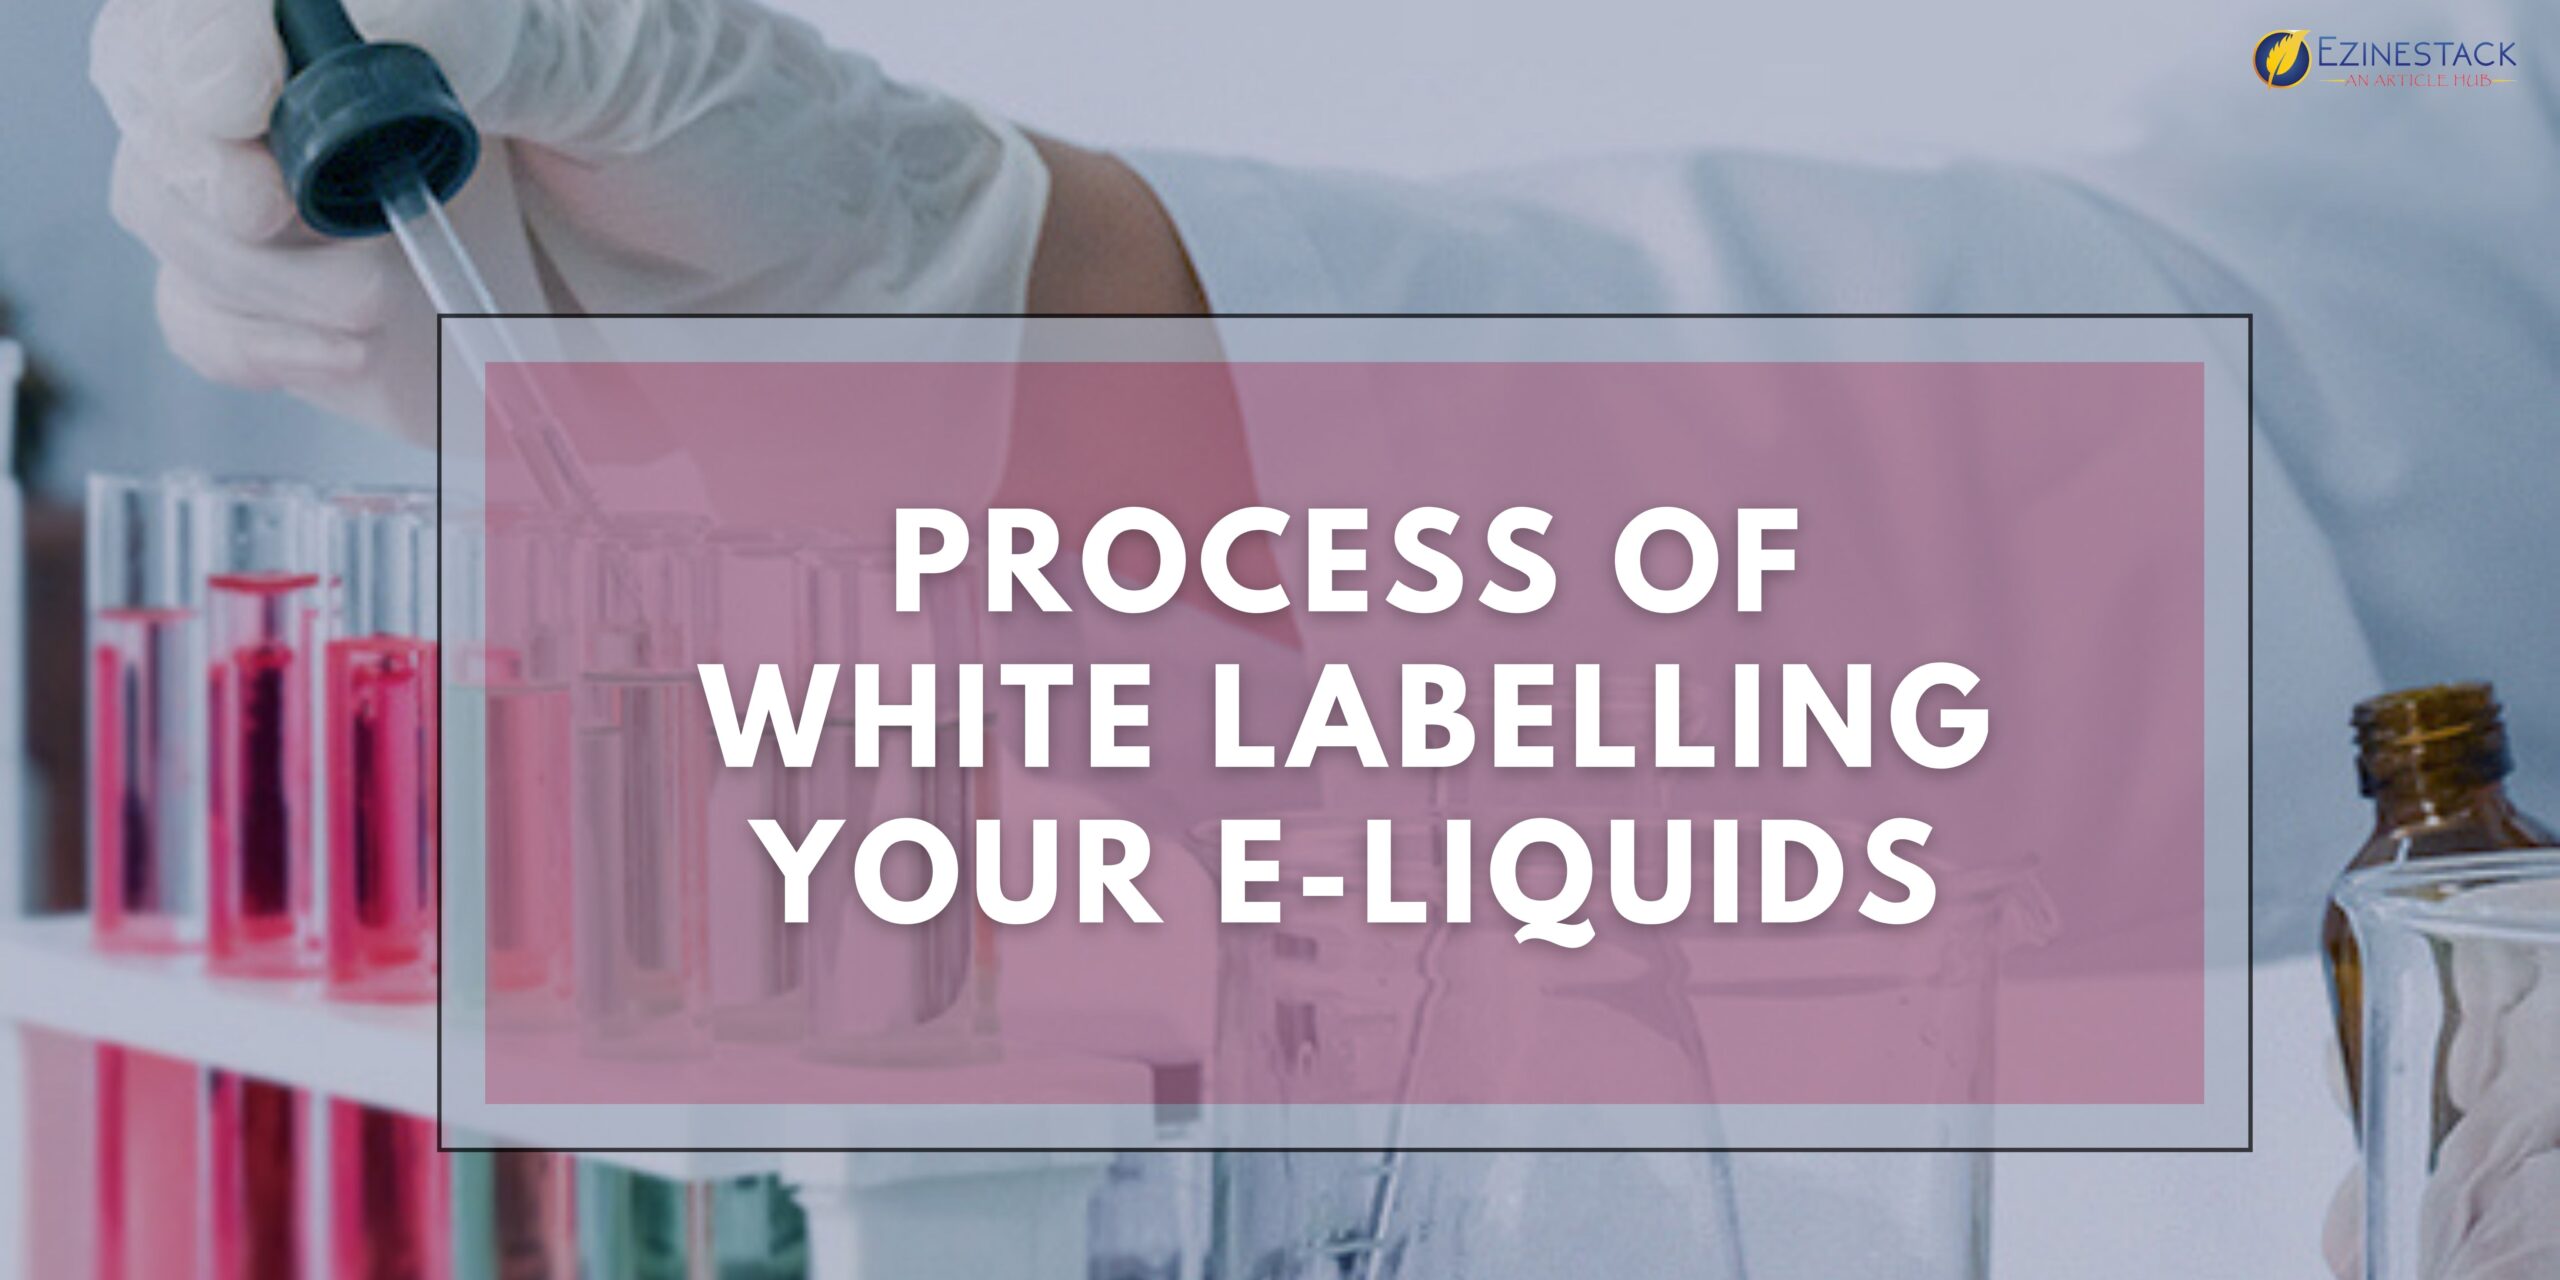 White Label Service: Process of White Labelling Your E-Liquids